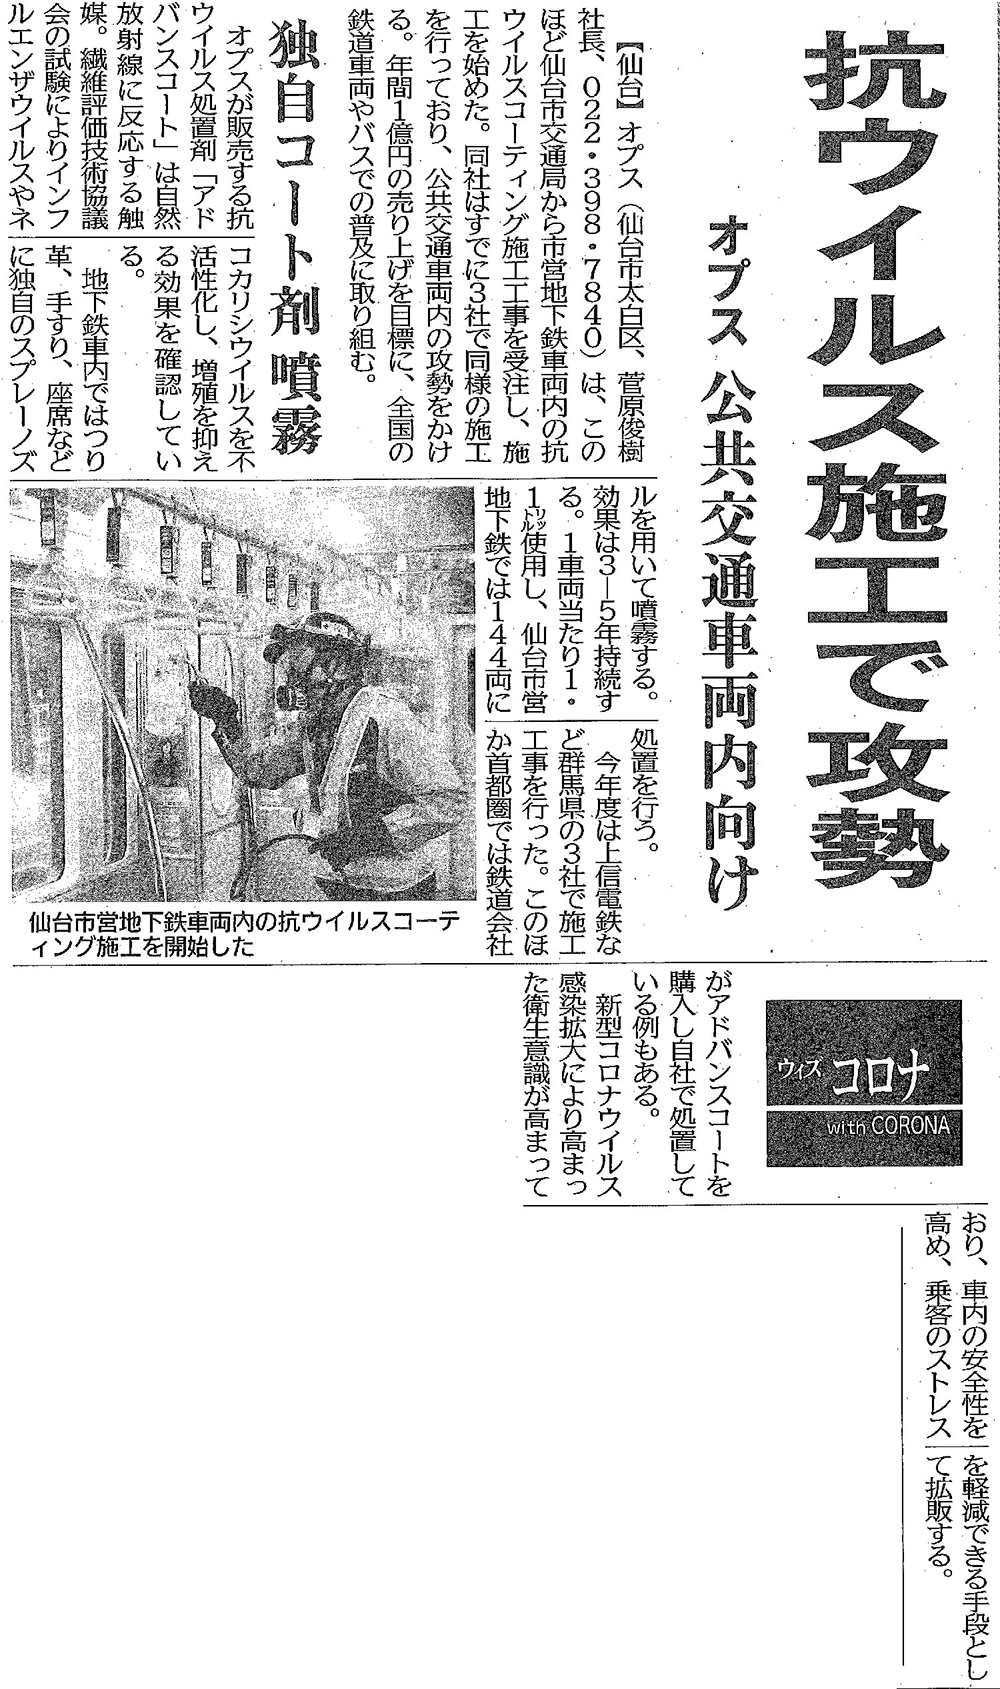 2020/11/10日本経済新聞